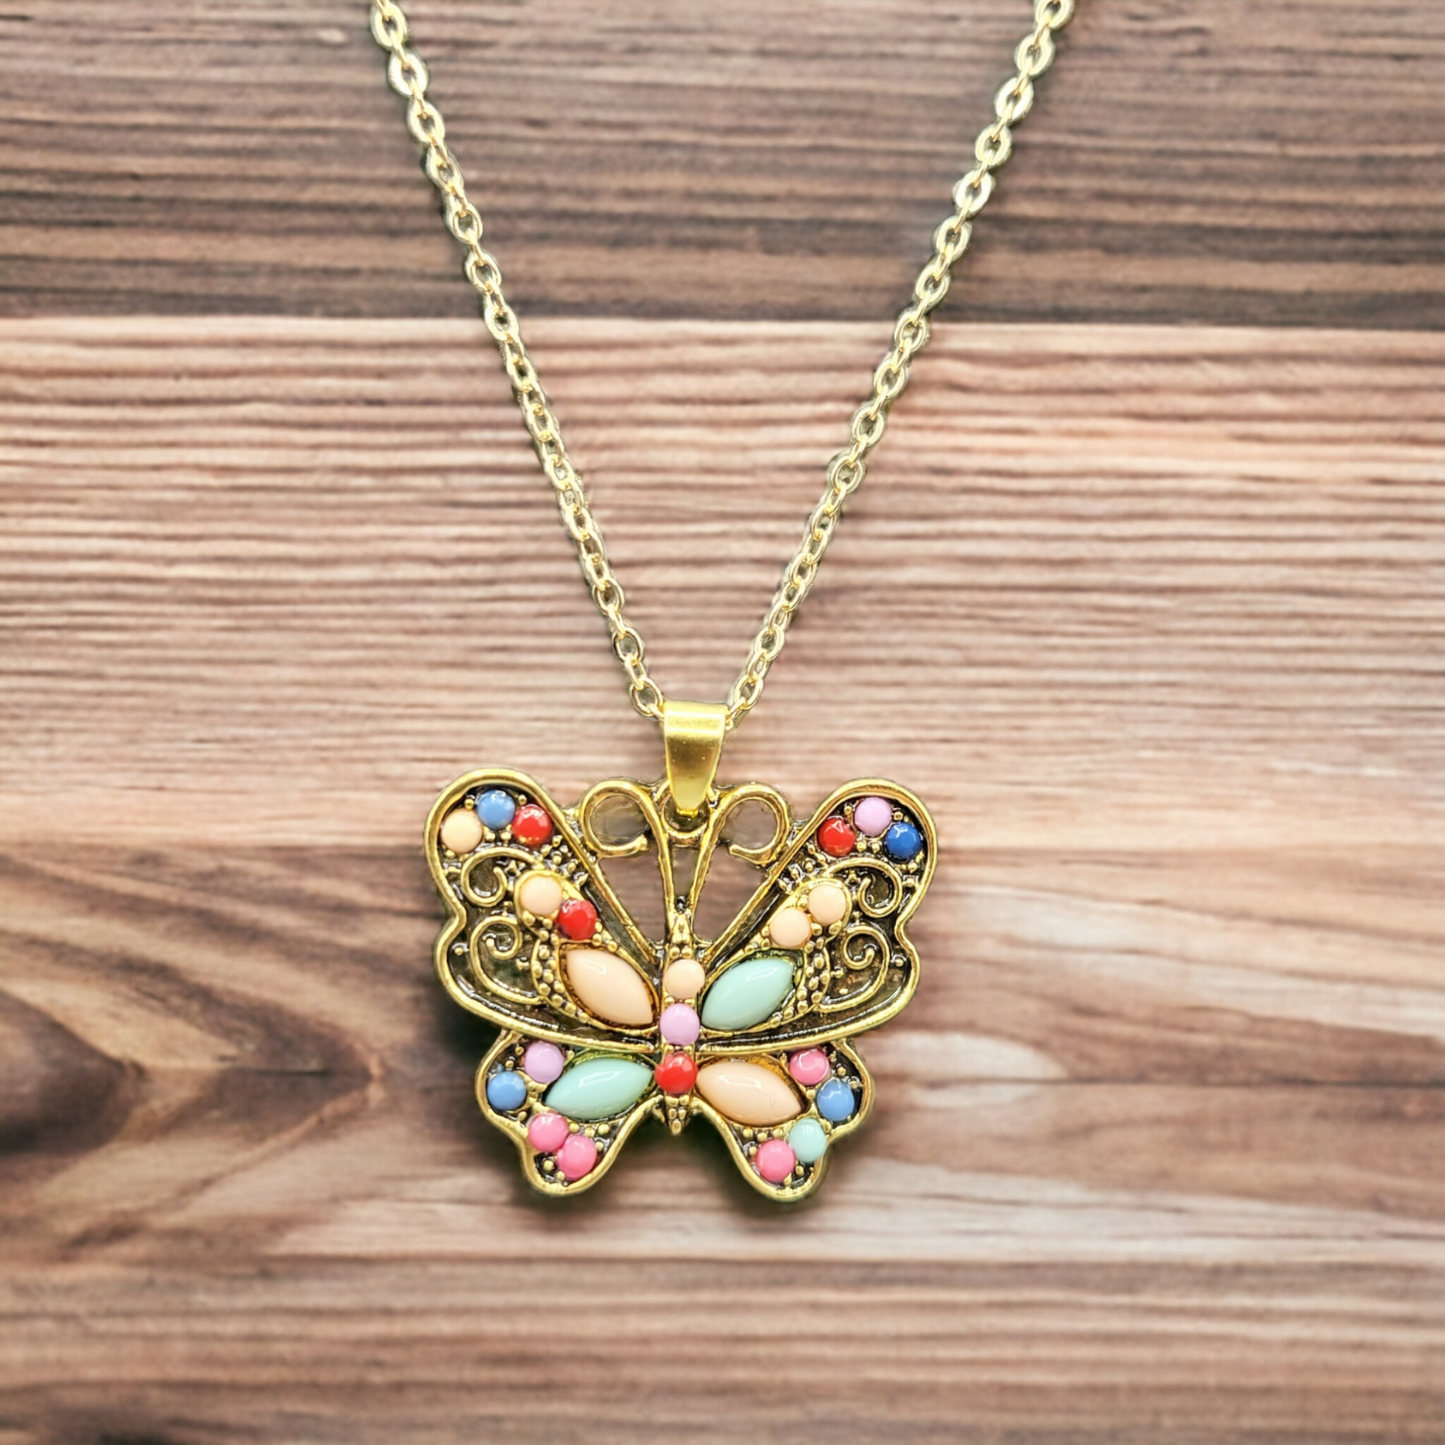 Brassy butterfly necklace